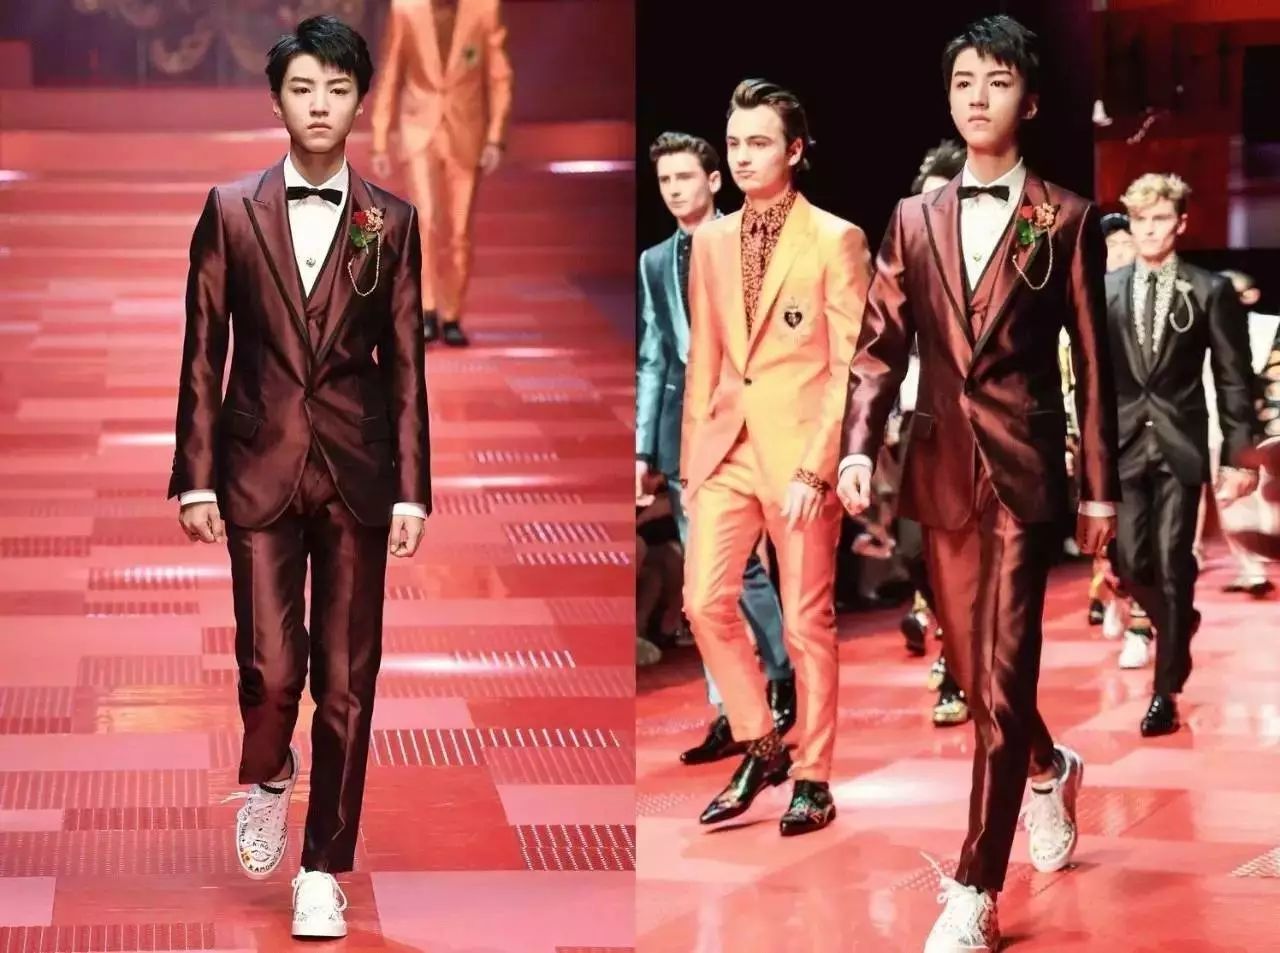 王俊凯米兰走秀创造历史,然而外国时尚专家却表示……